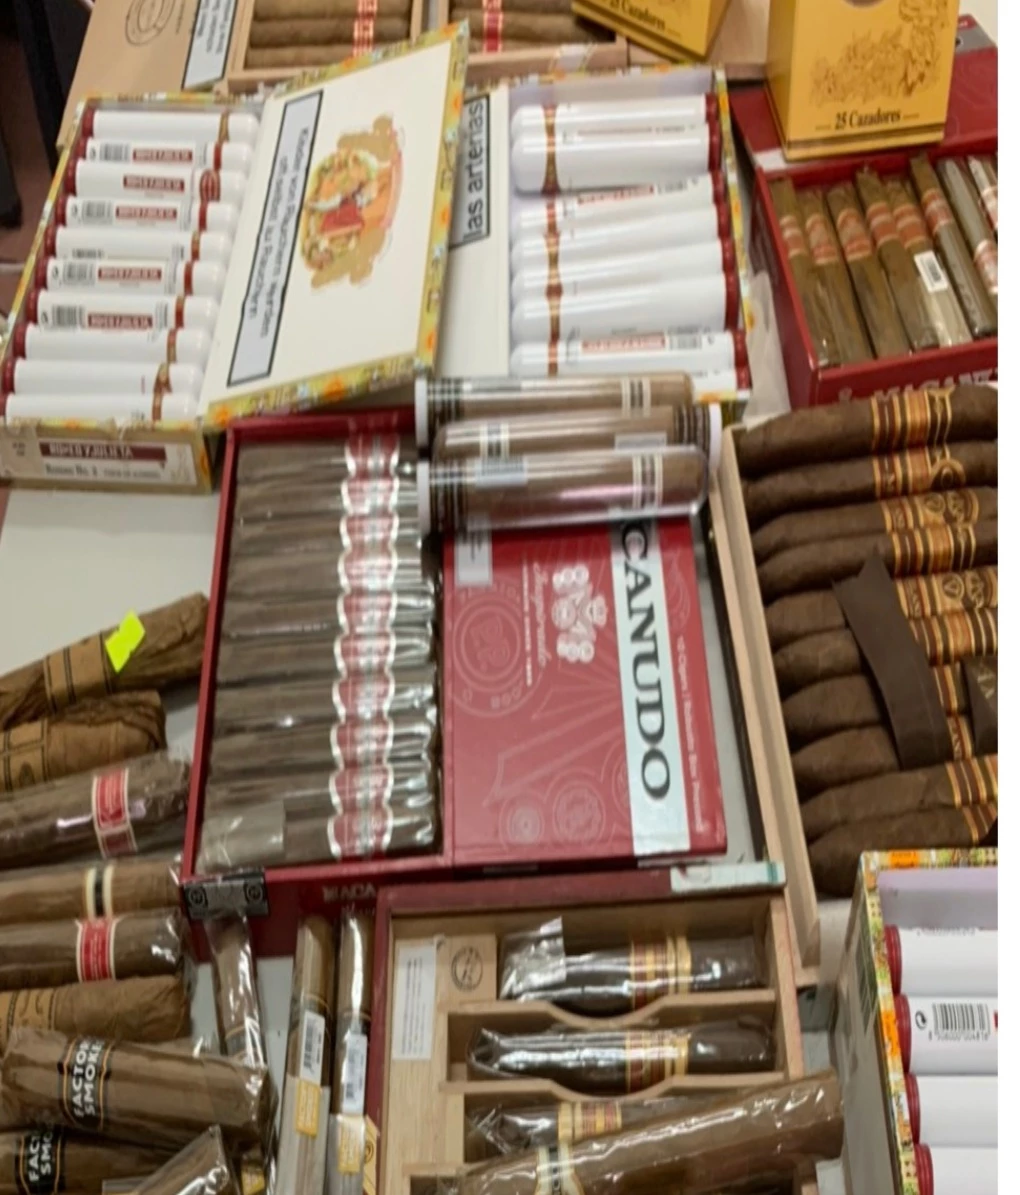 217 điếu xì gà nhập lậu bị bắt giữ và xử phạt hành chính 23 triệu đồng